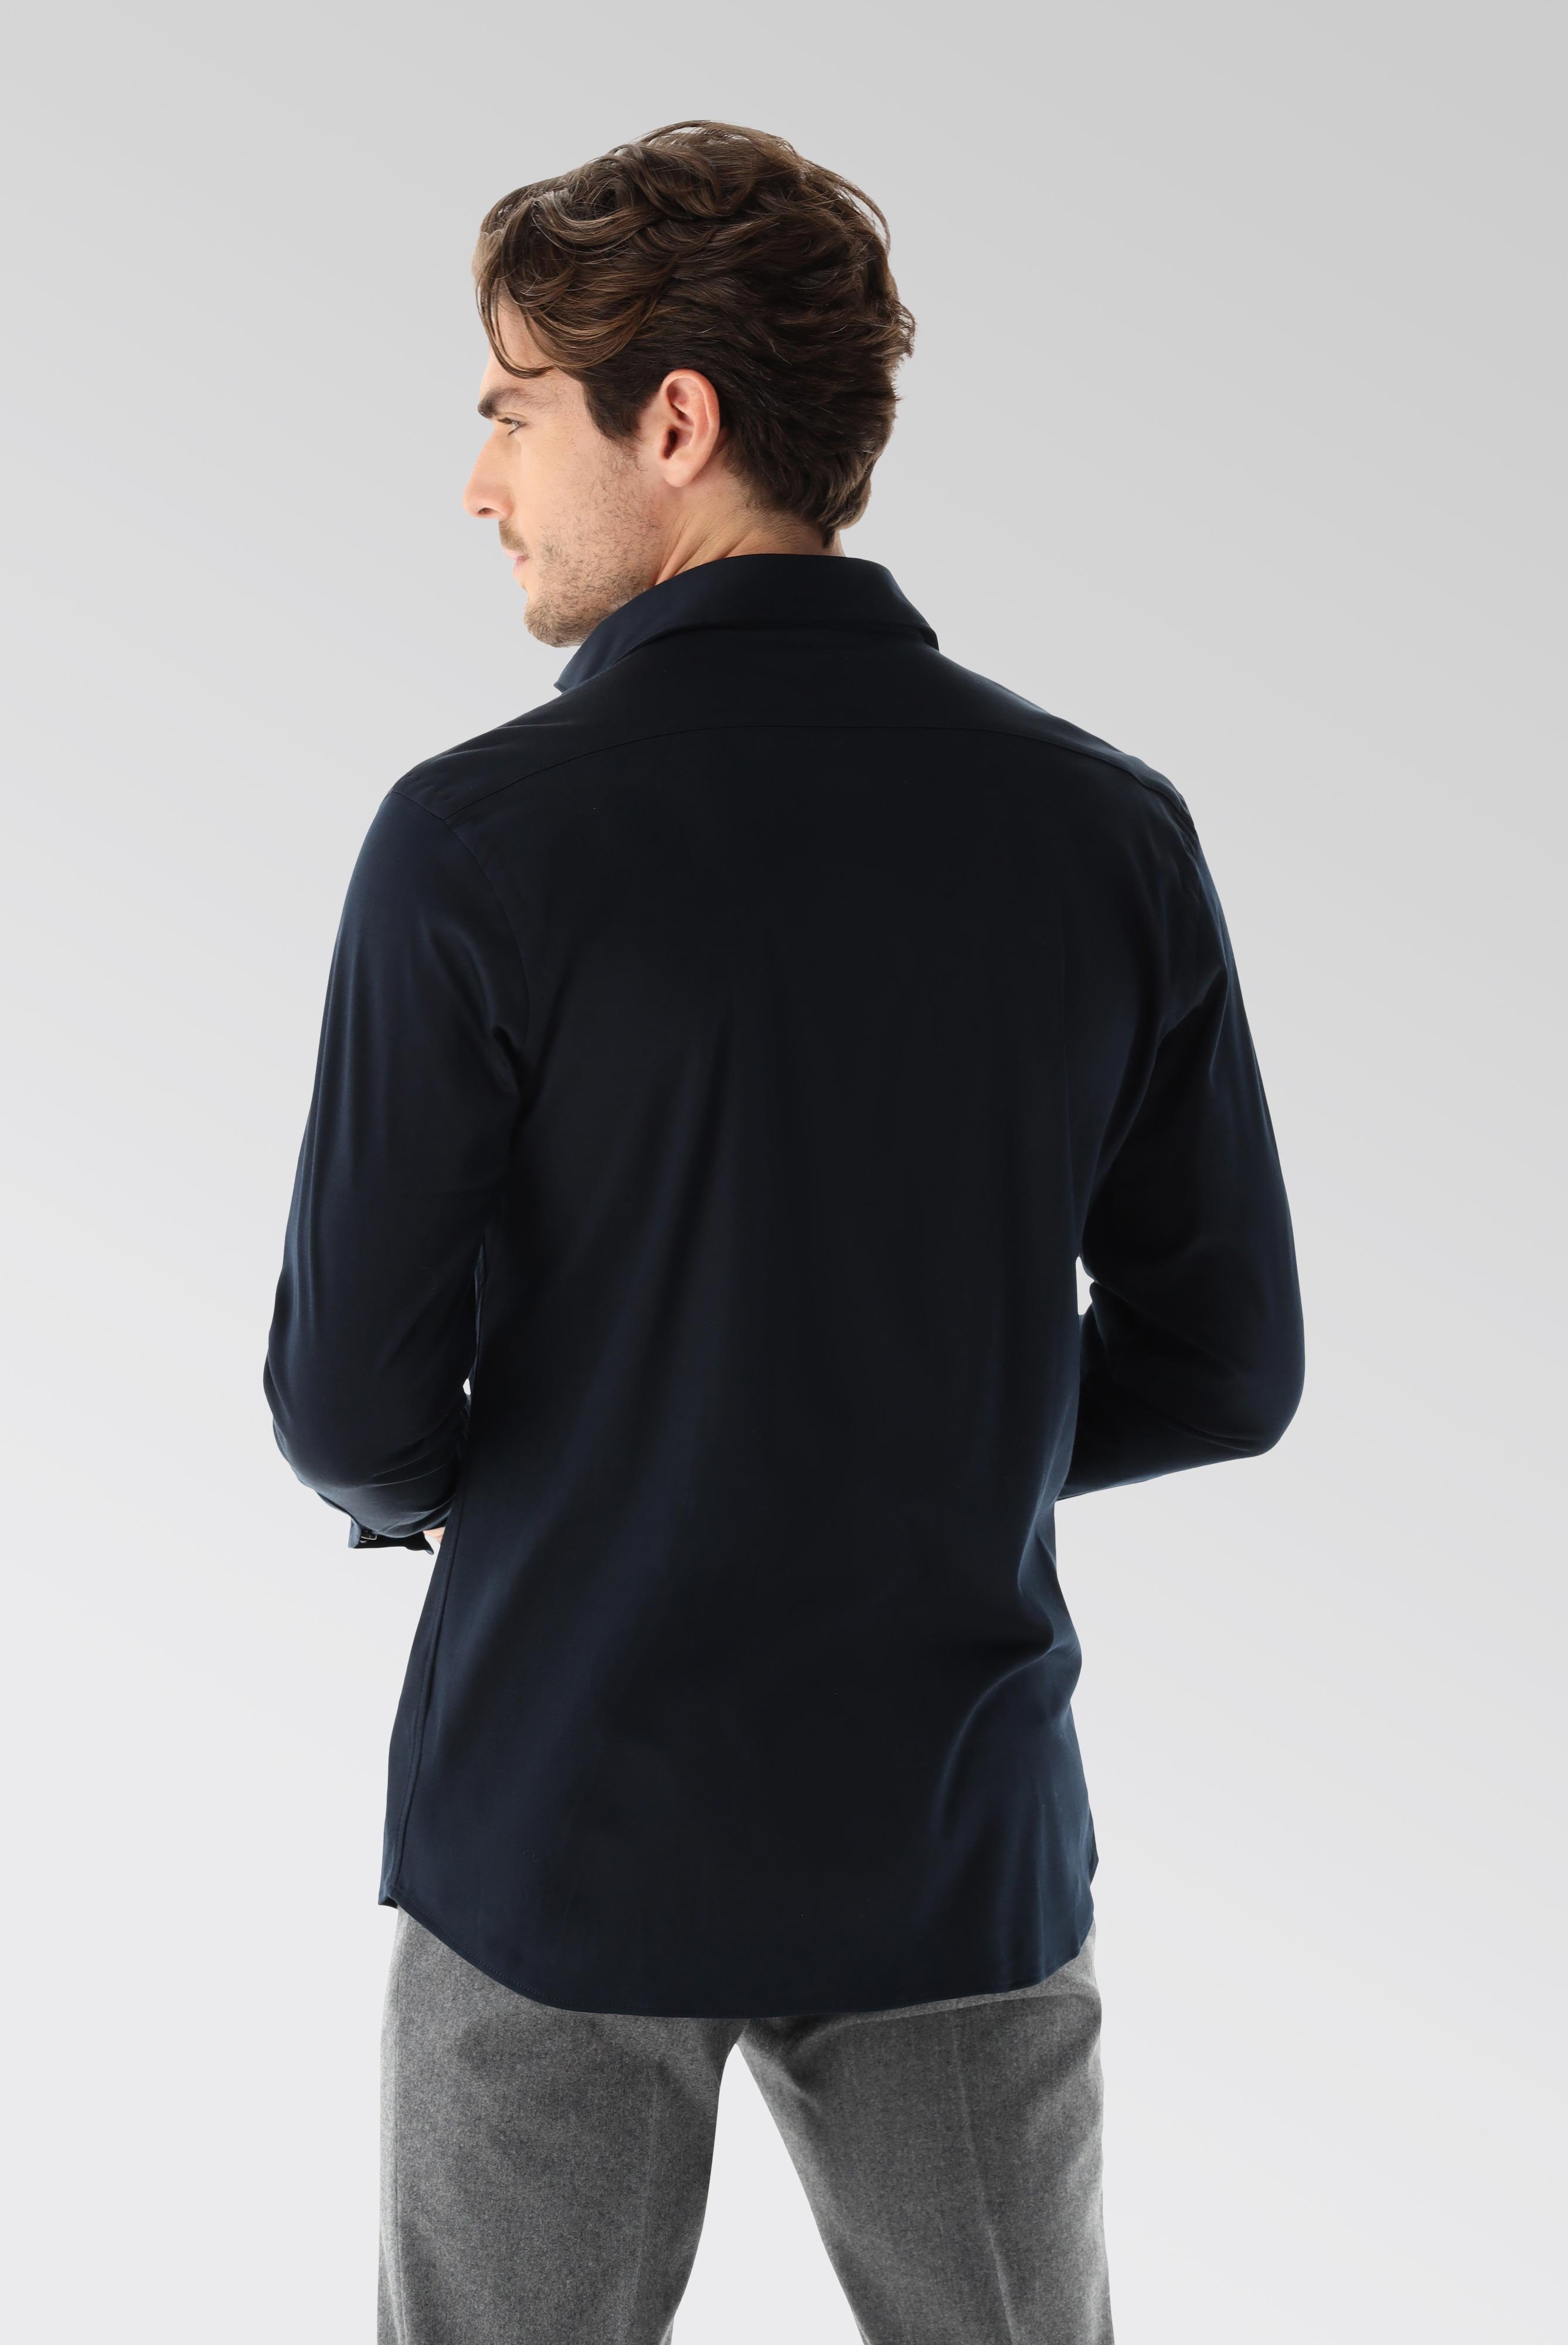 Bügelleichte Hemden+Jersey Hemd mit glänzender Optik Tailor Fit+20.1683.UC.180031.790.M